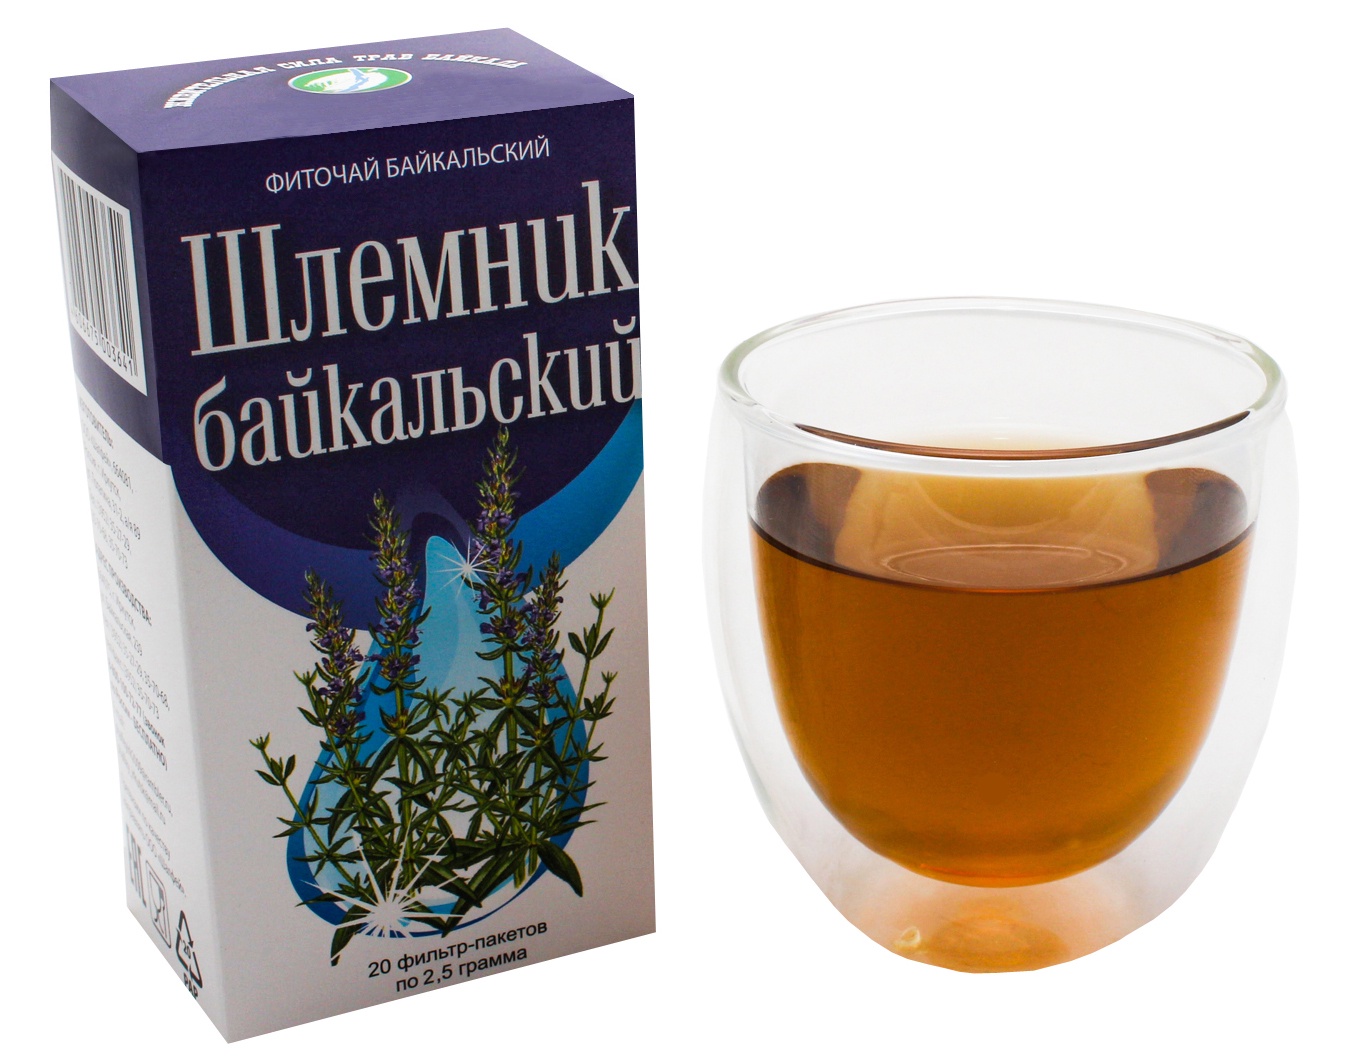 Шлёмник Байкальский фито чай